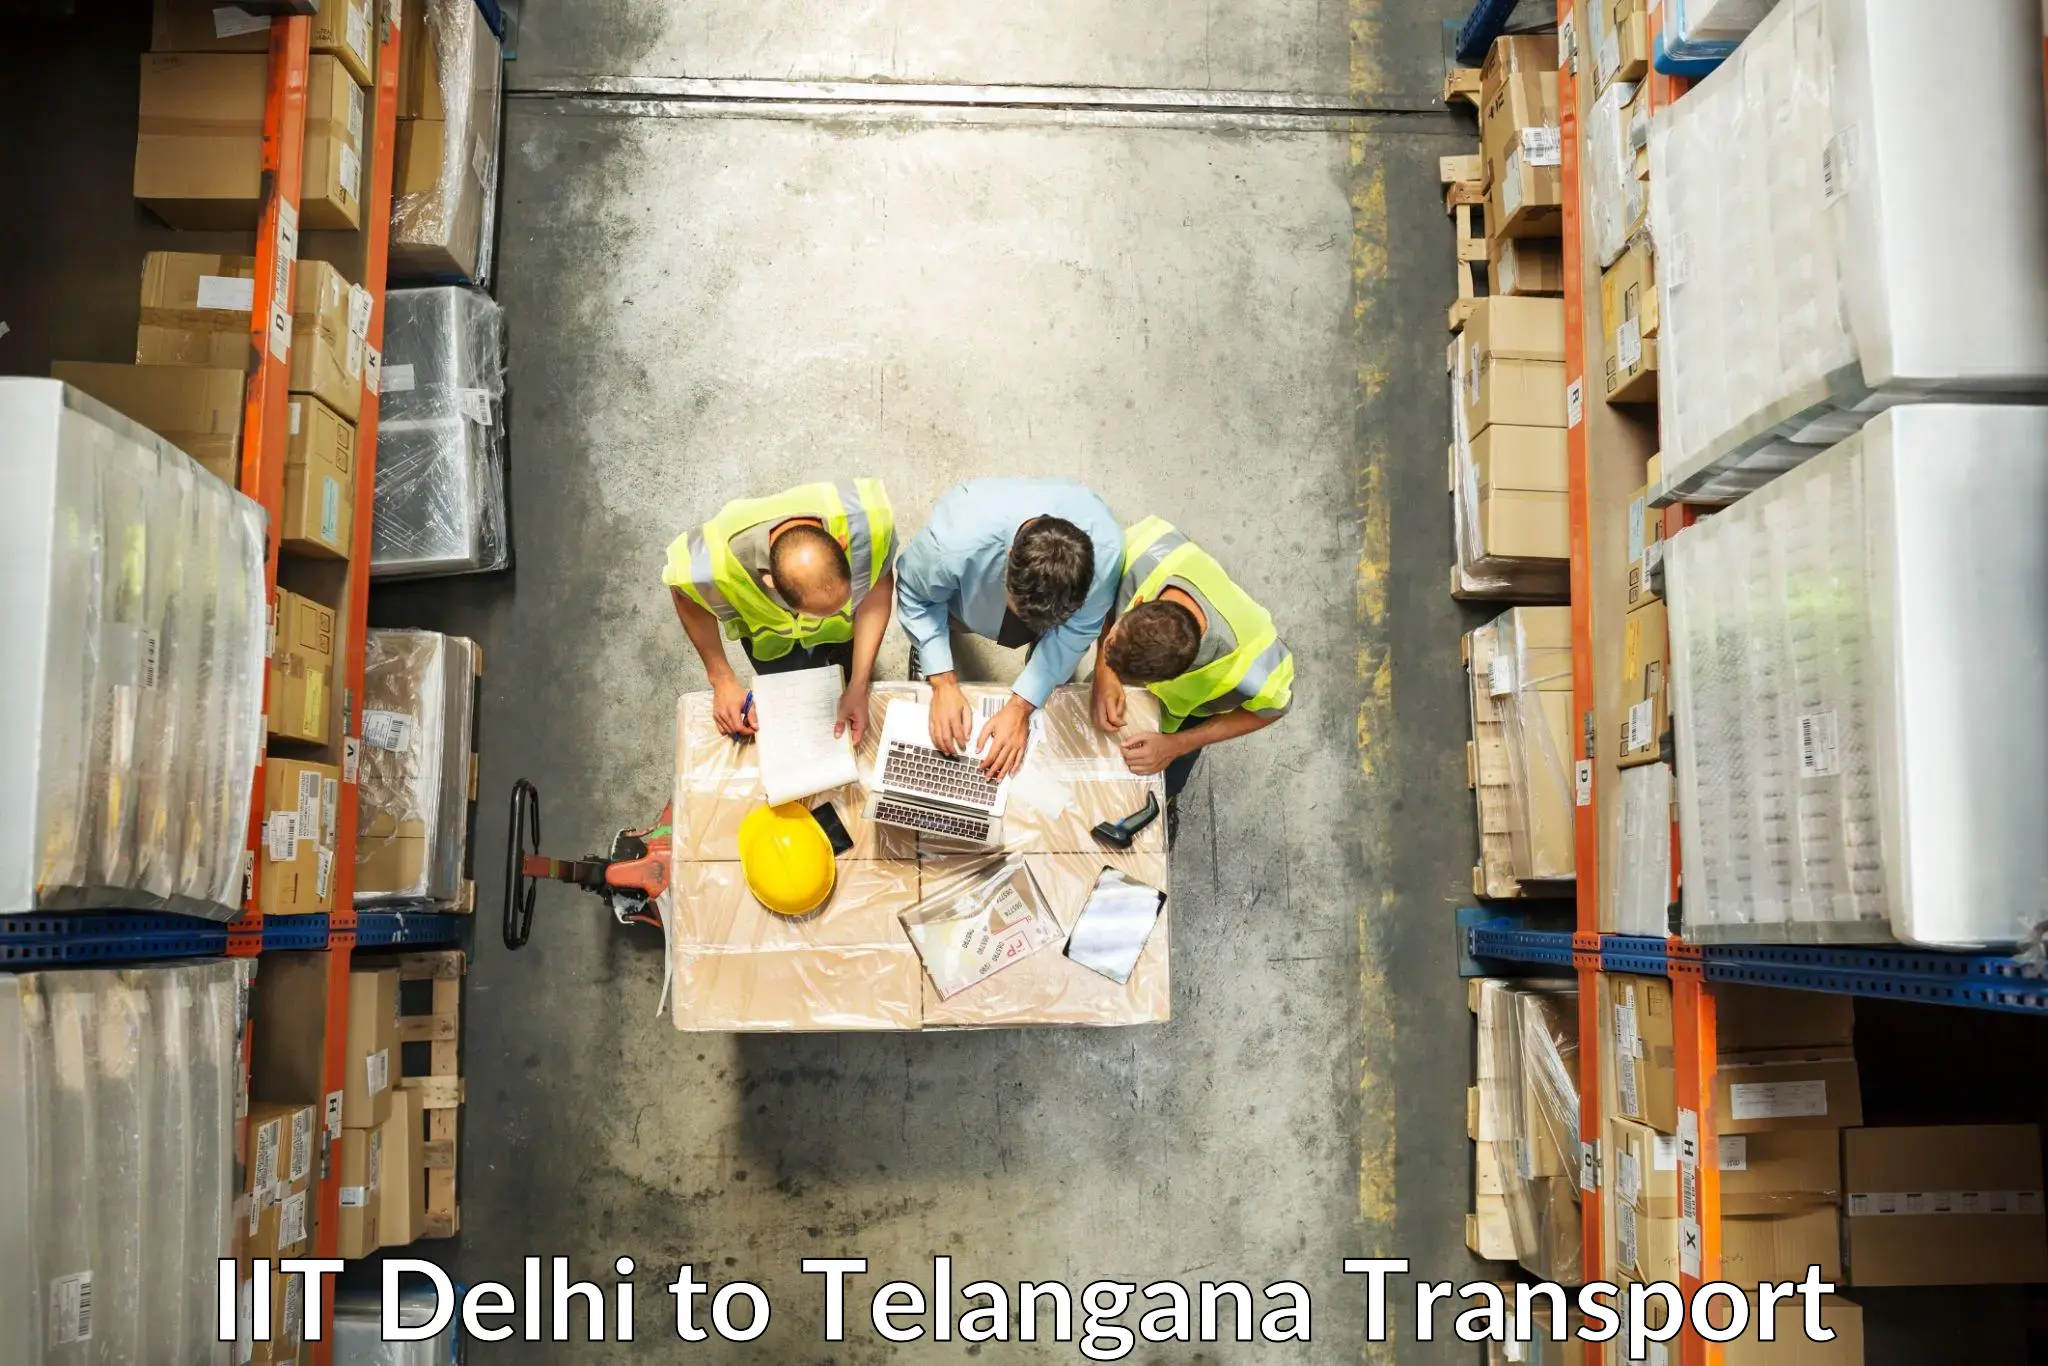 Online transport service IIT Delhi to Kalwakurthy